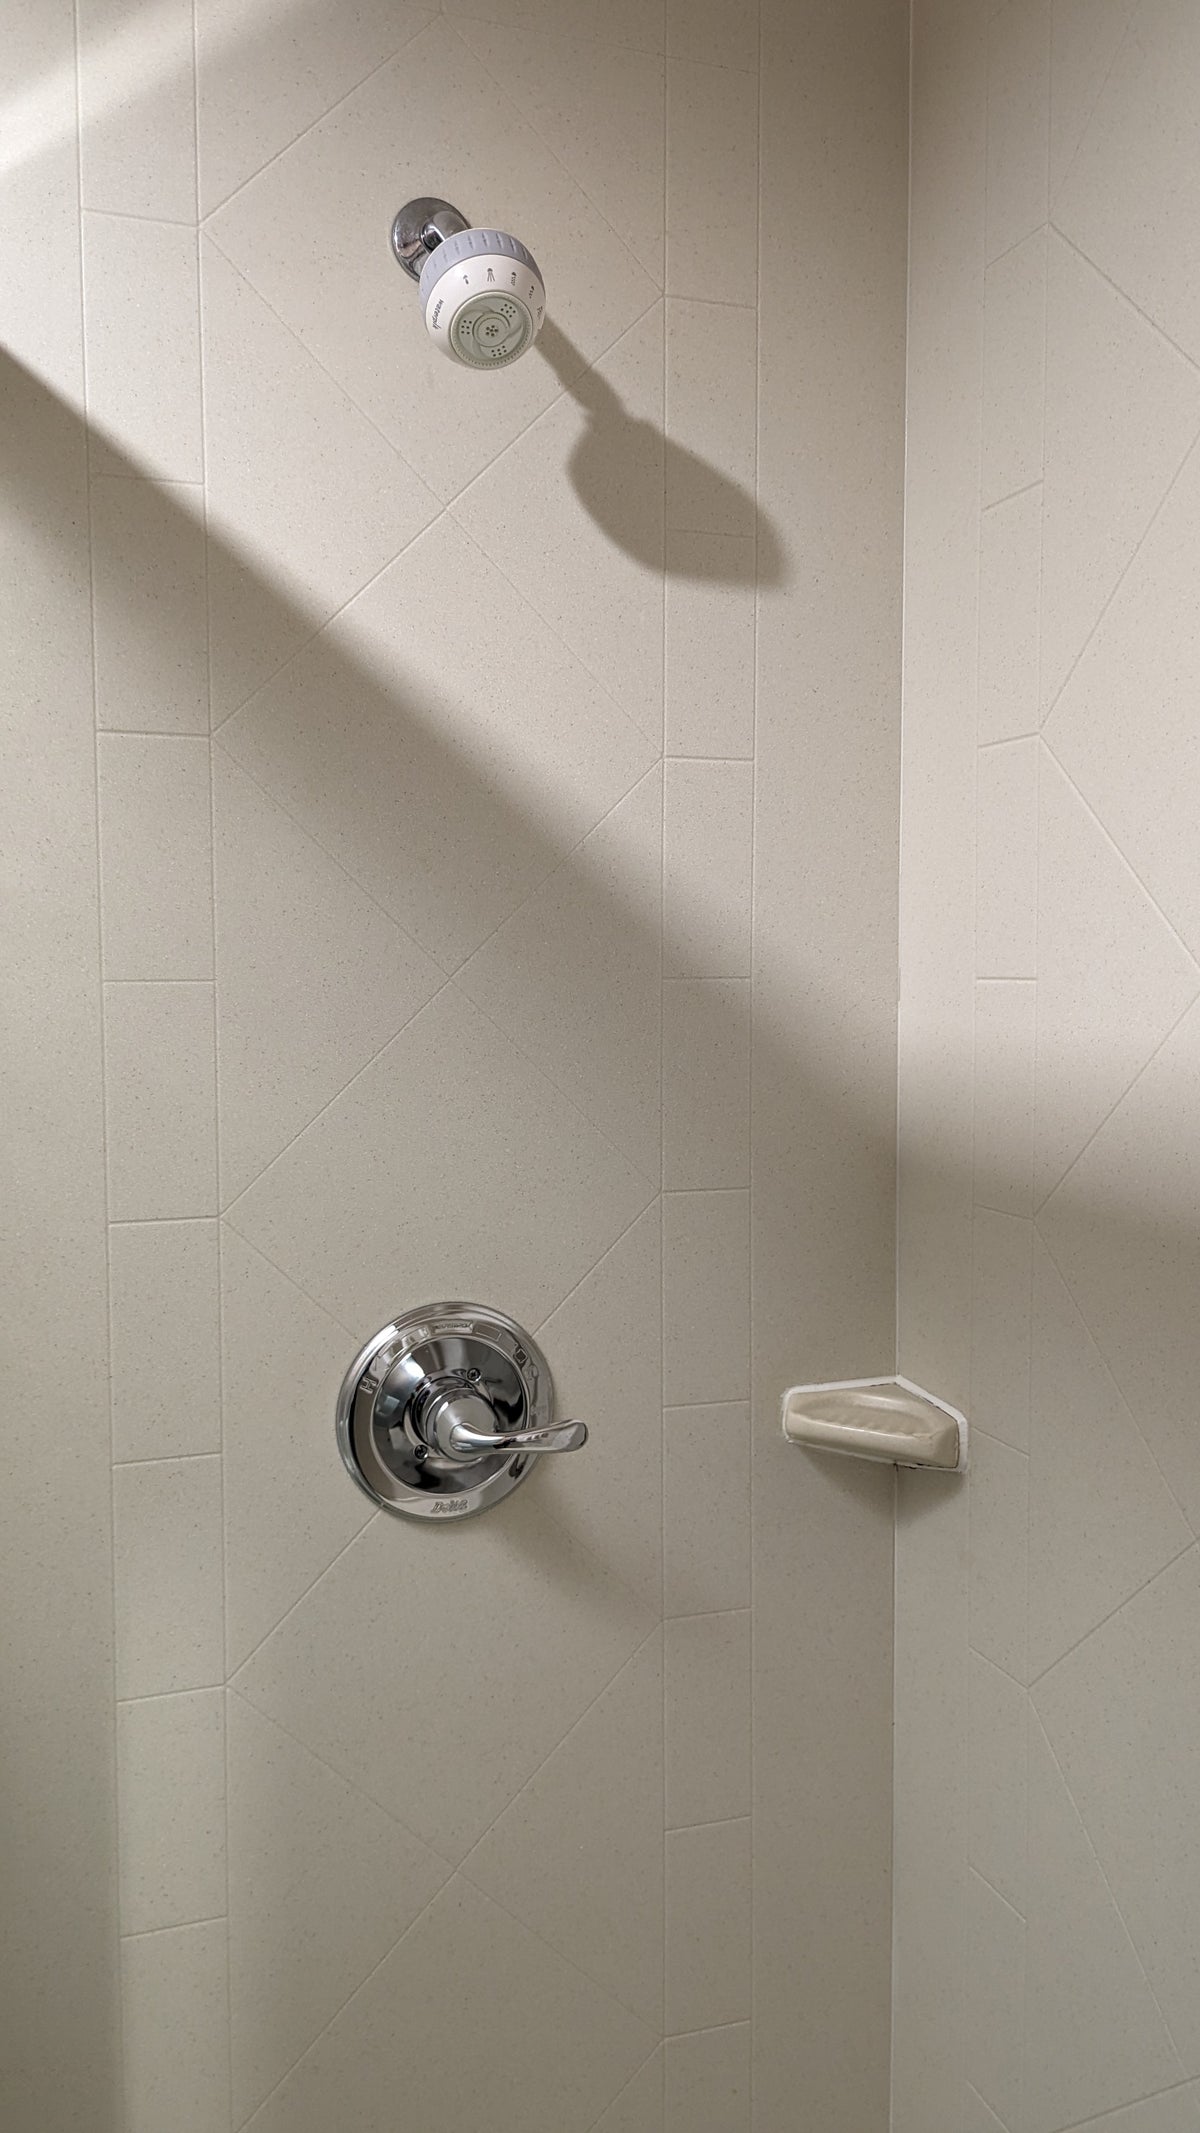 Hampton Inn Suites Hope guestroom bathroom showerhead